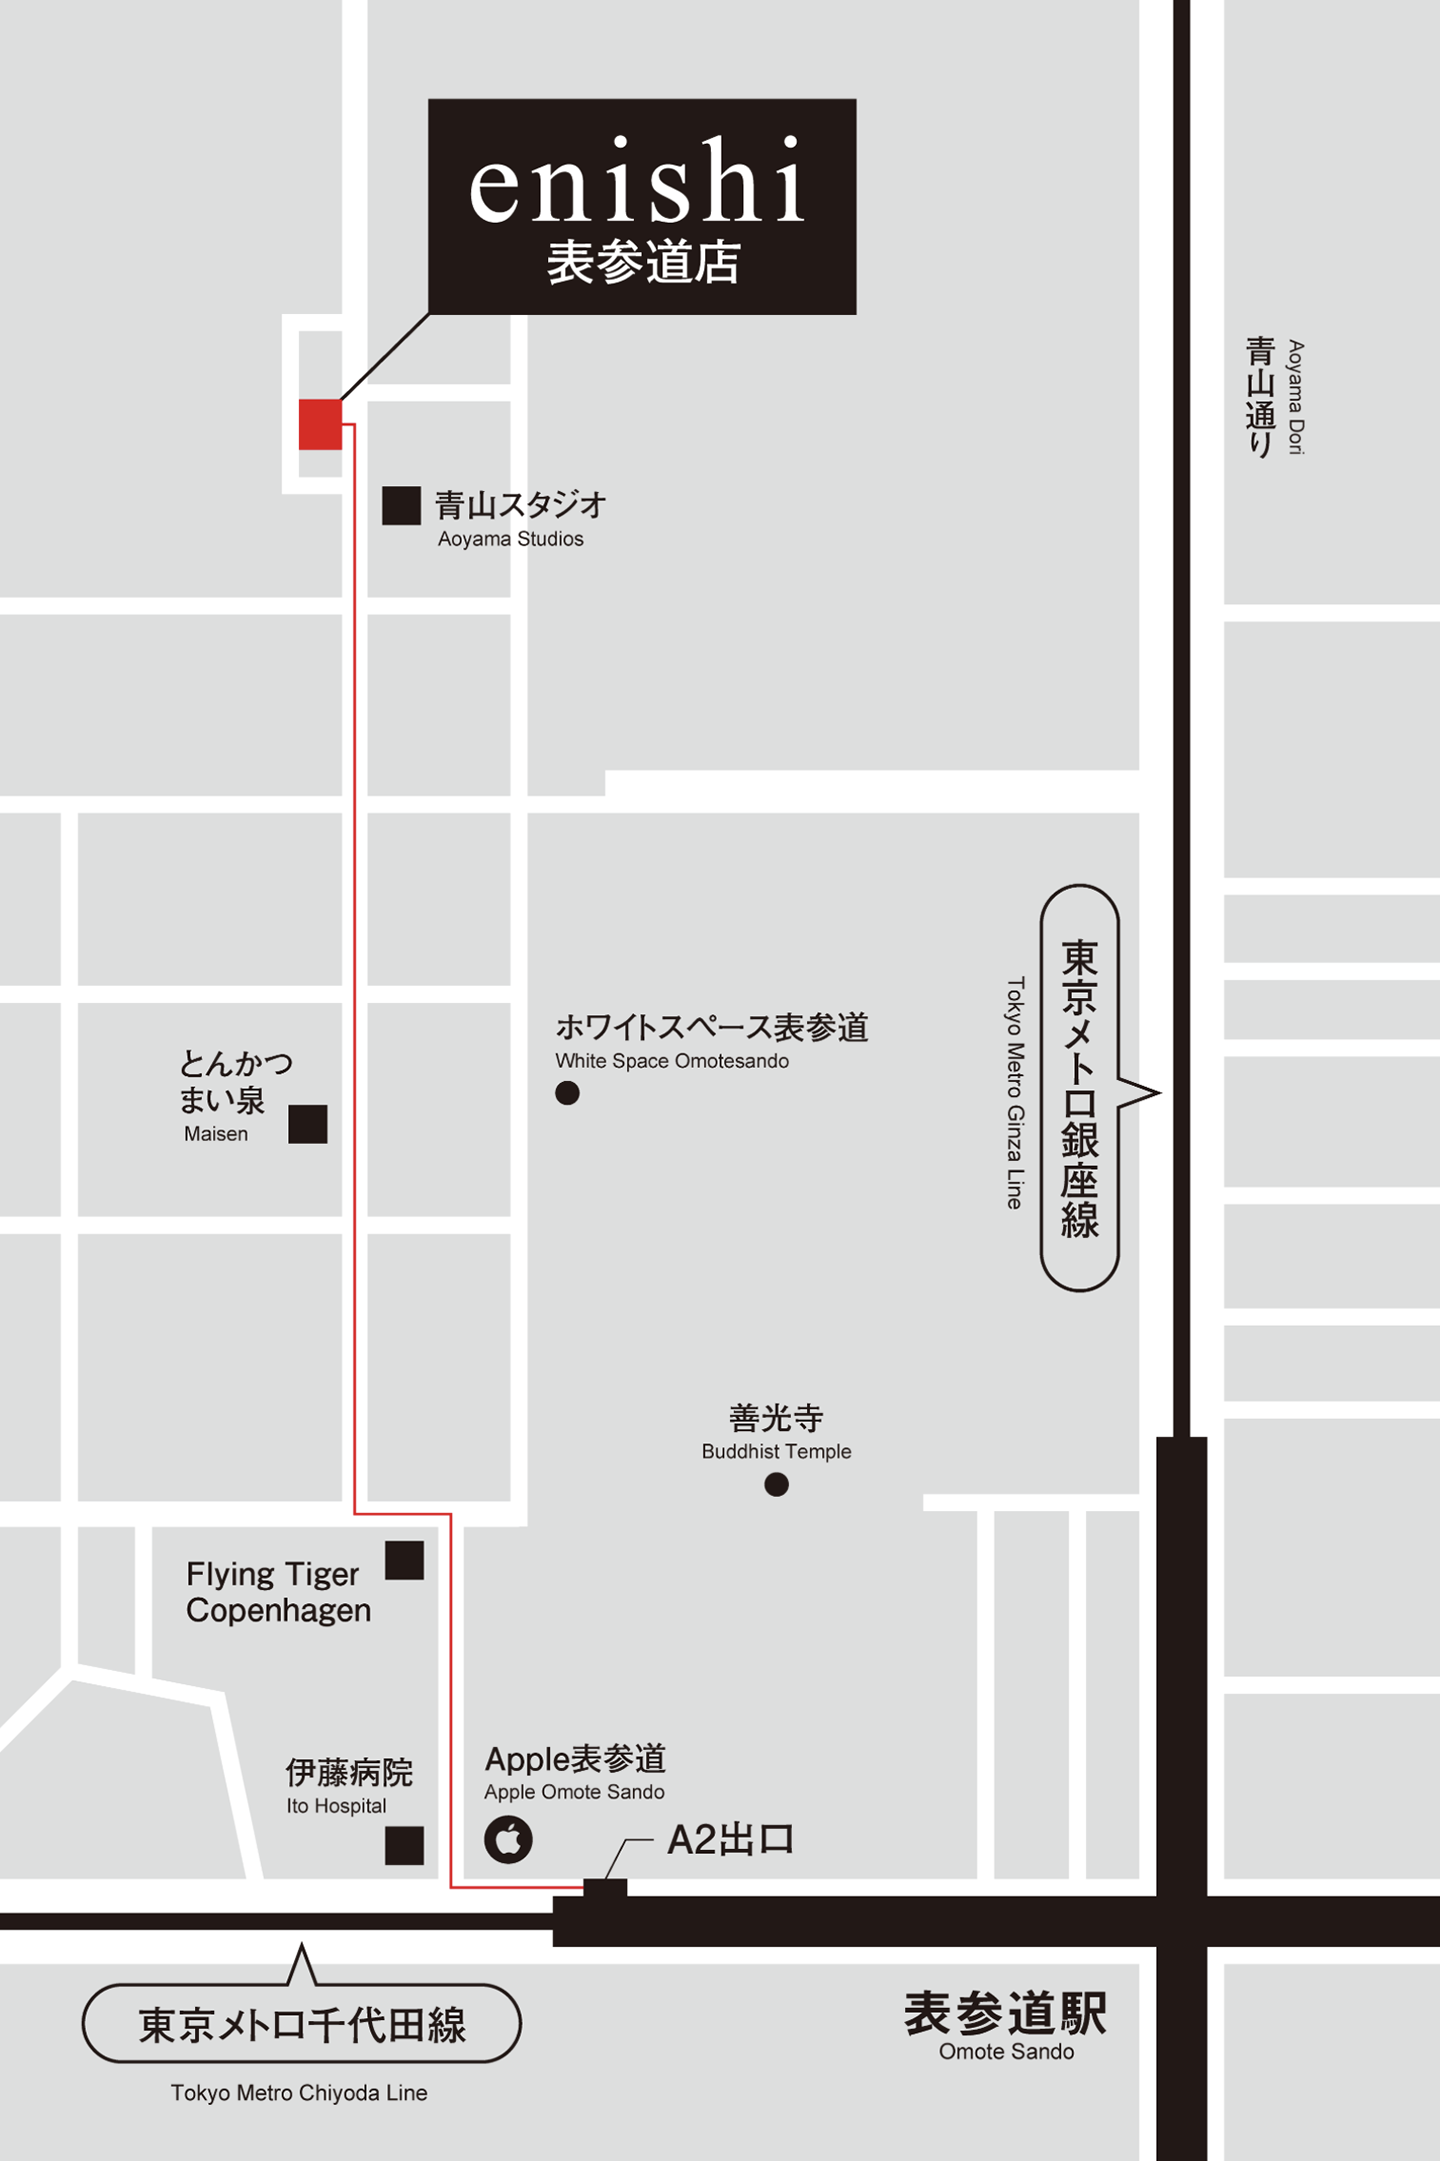 東京店地図